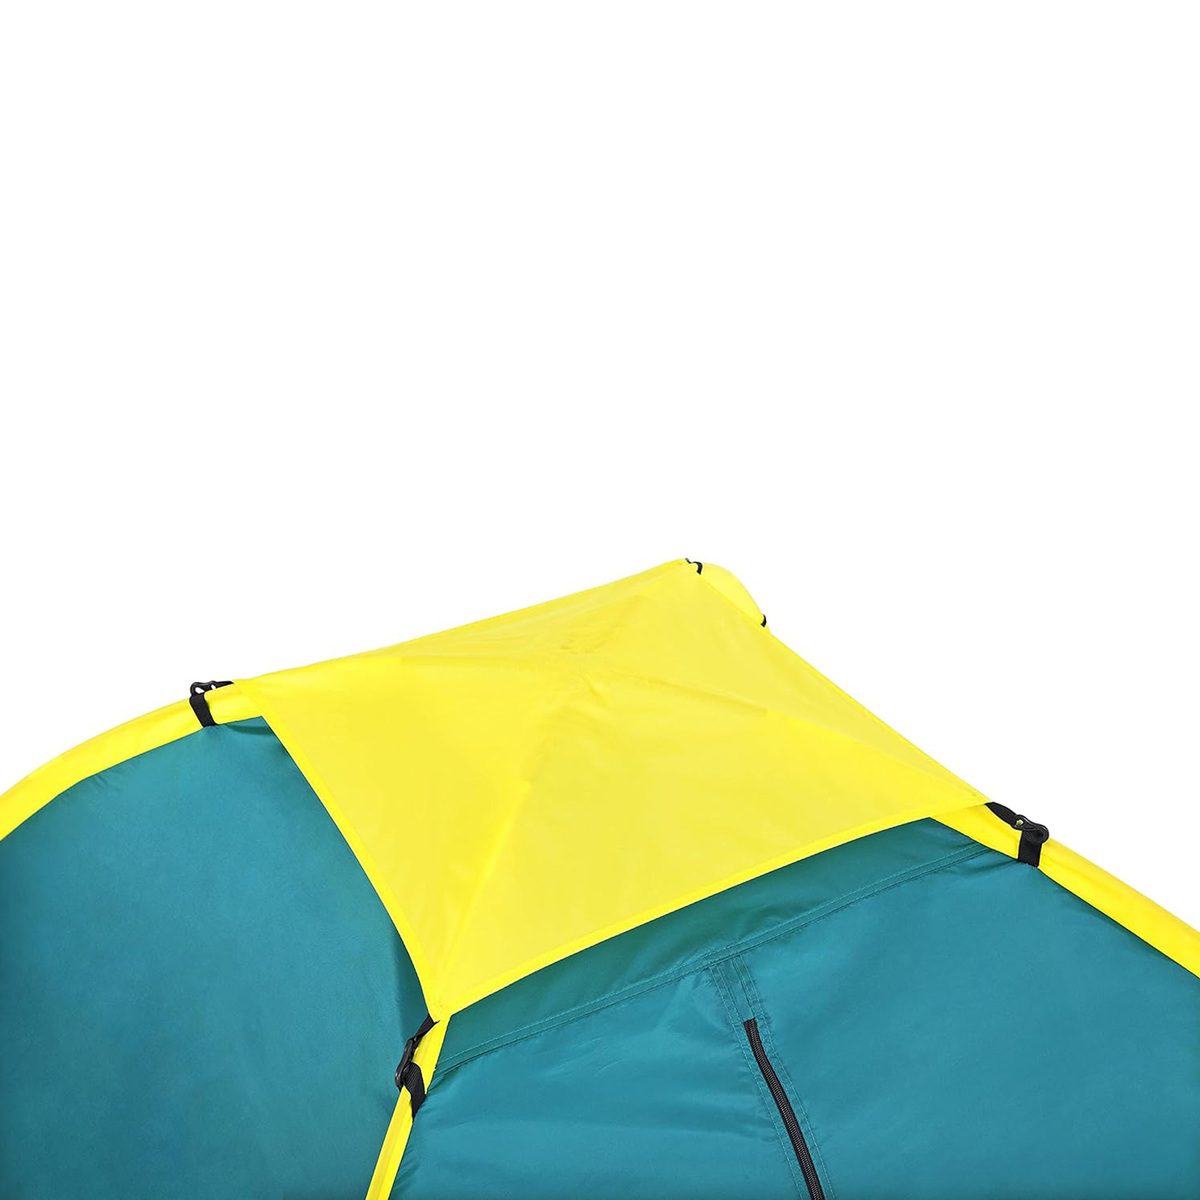 بيست واي خيمة بافيلو كولدوم تتسع لثلاثة أشخاص، 210 × 210 × 130 سم، 68085